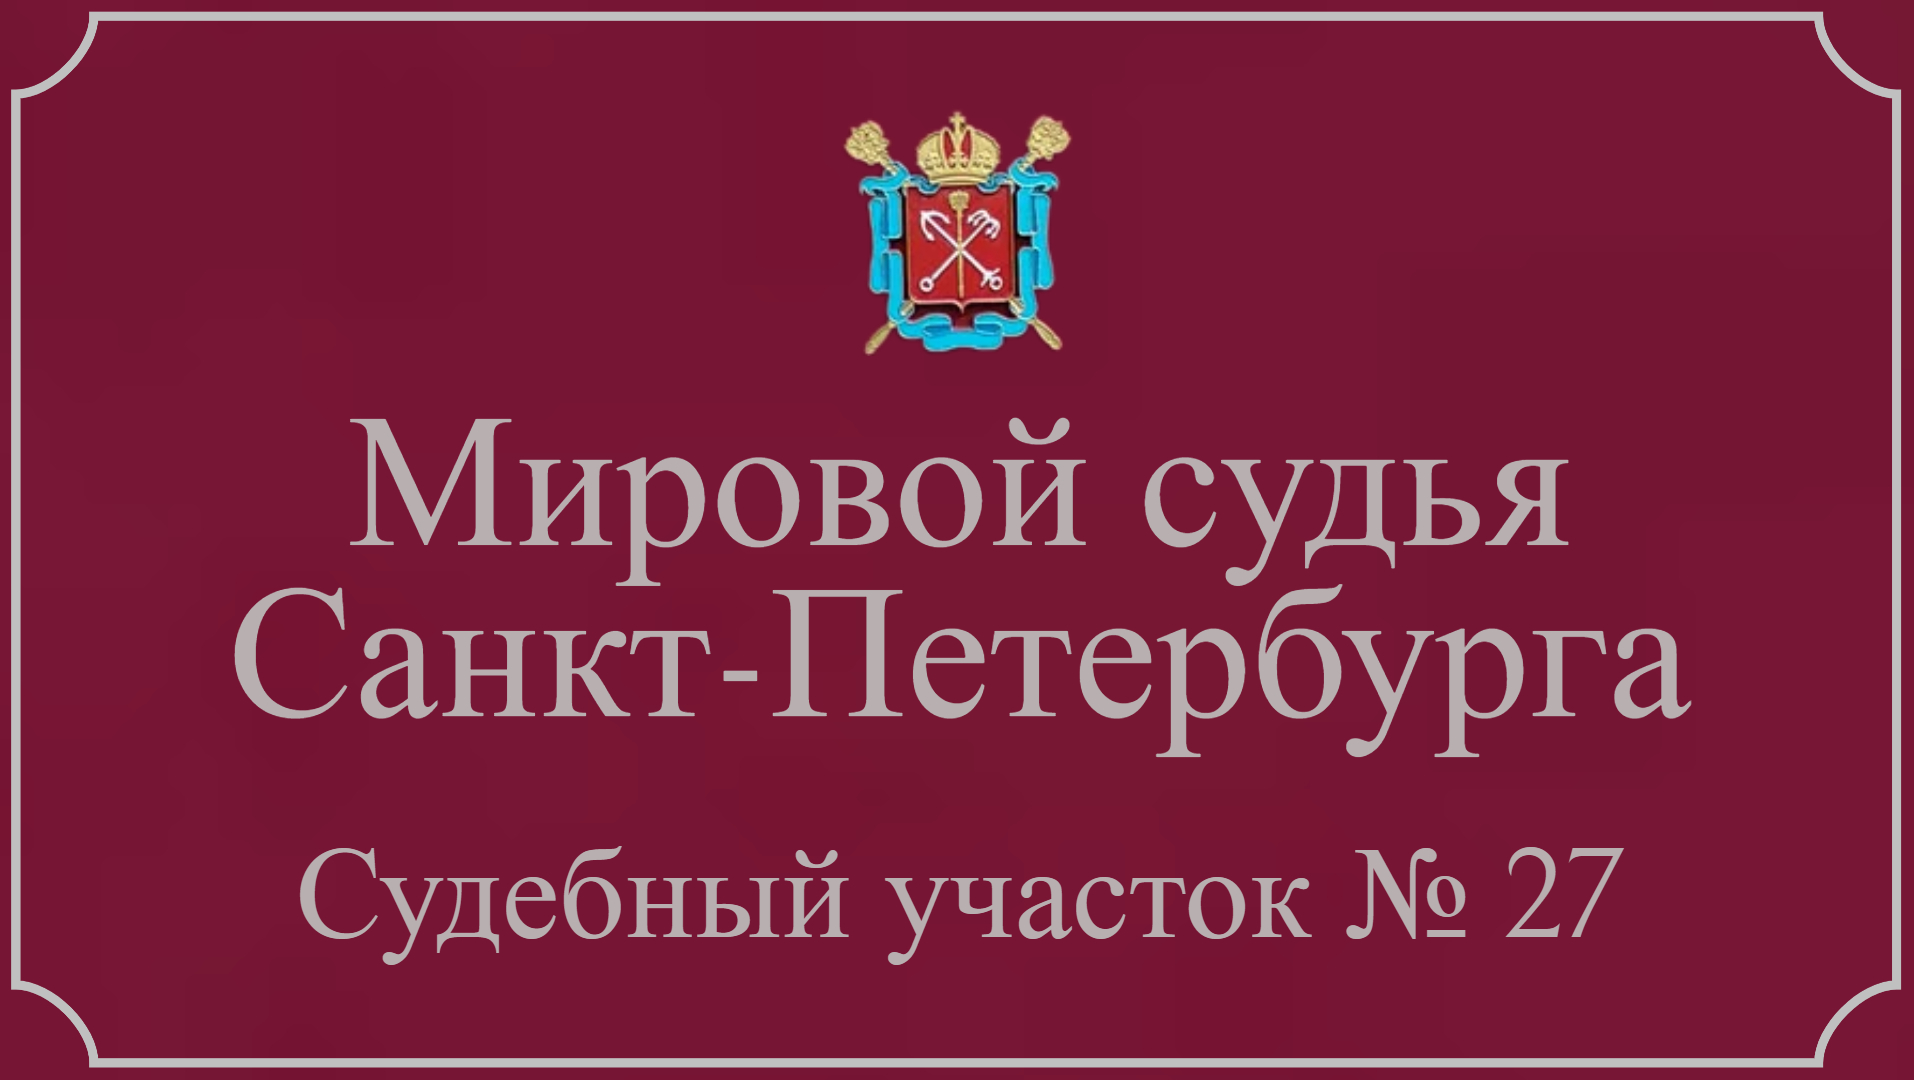 Информация по 27 судебному участку в Санкт-Петербурге.